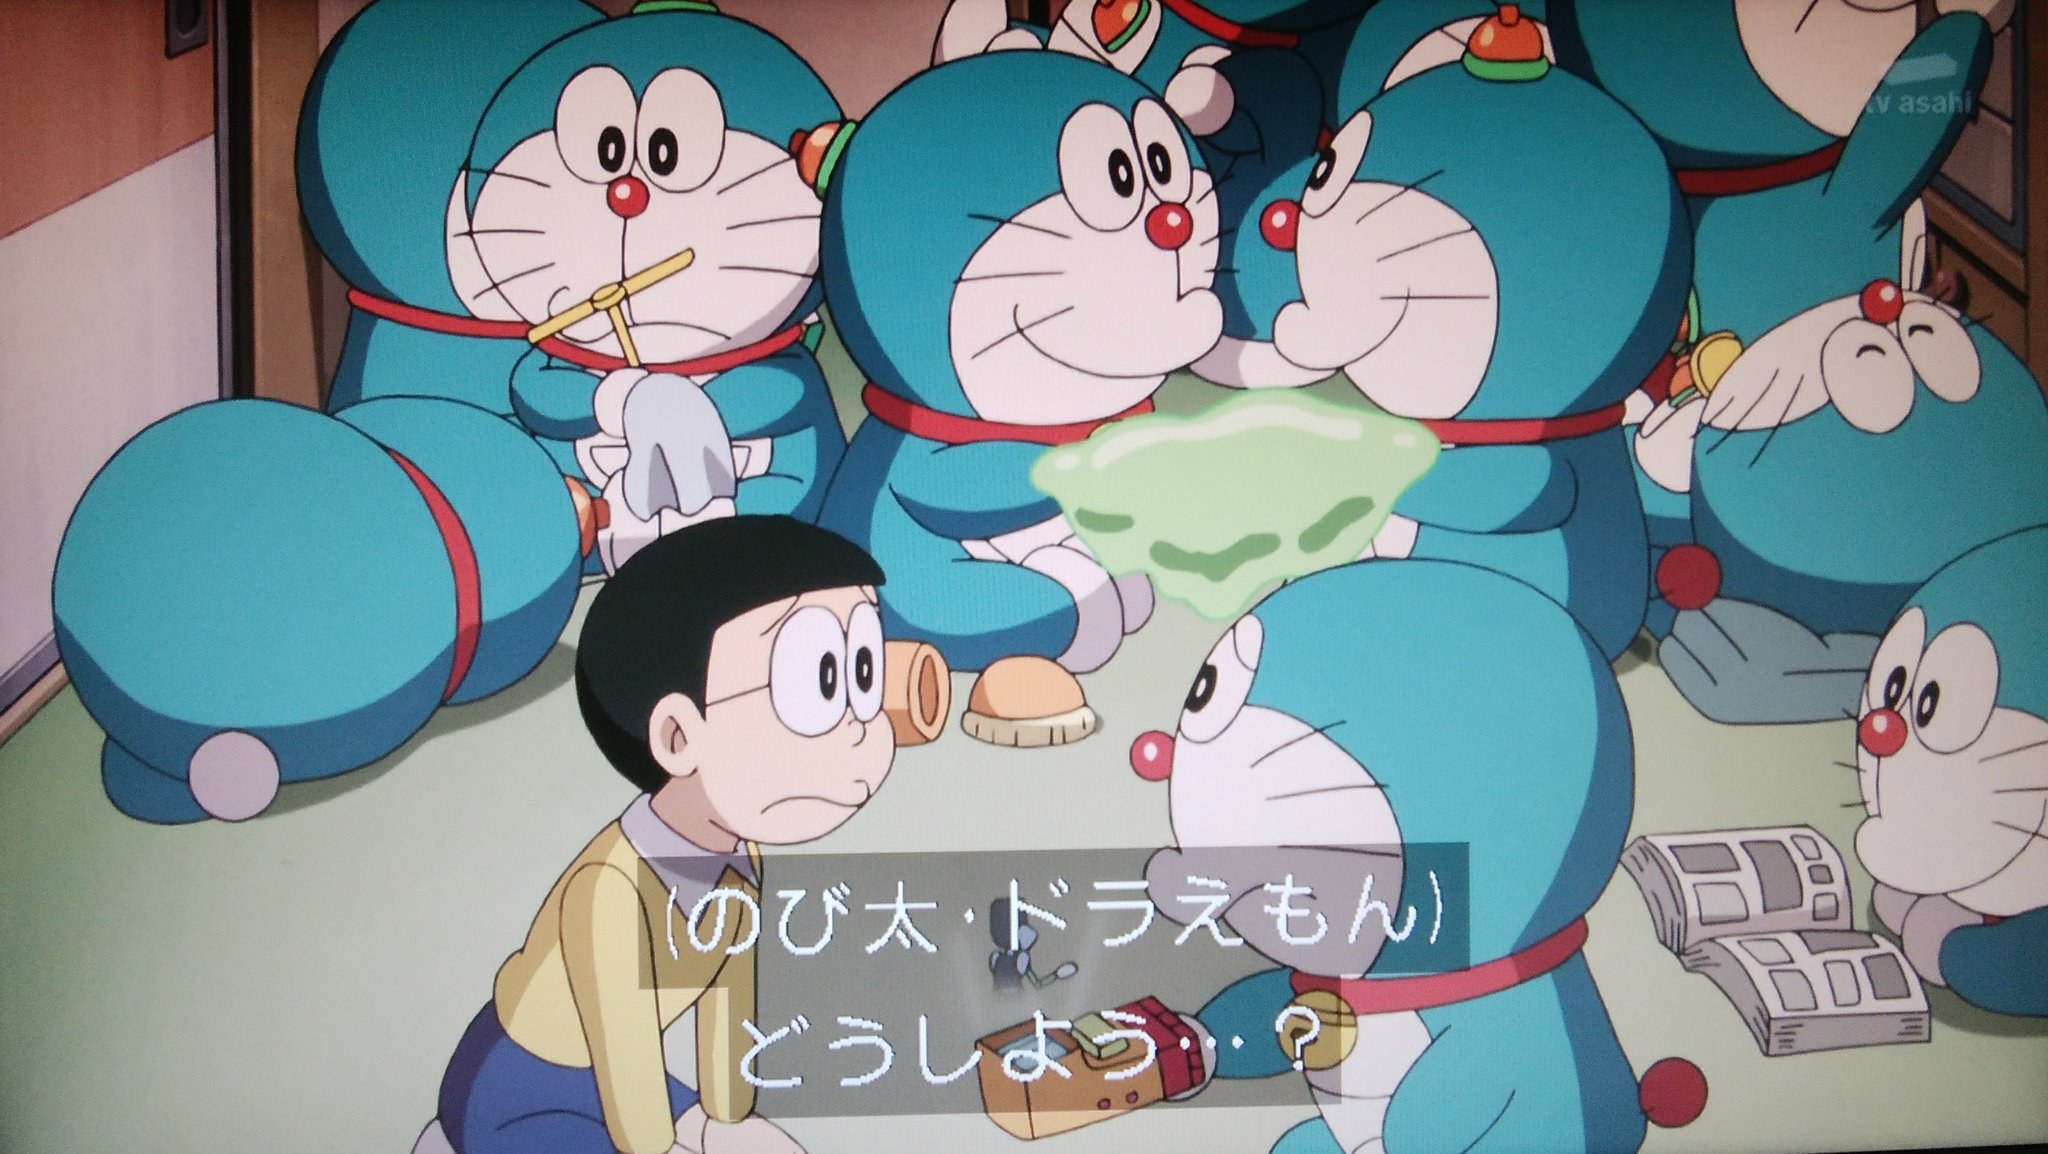 早稲田大学ドラえもん研究会 No Twitter カオスなことにww ドラえもん Doraemon T Co 80oes98lnf Twitter